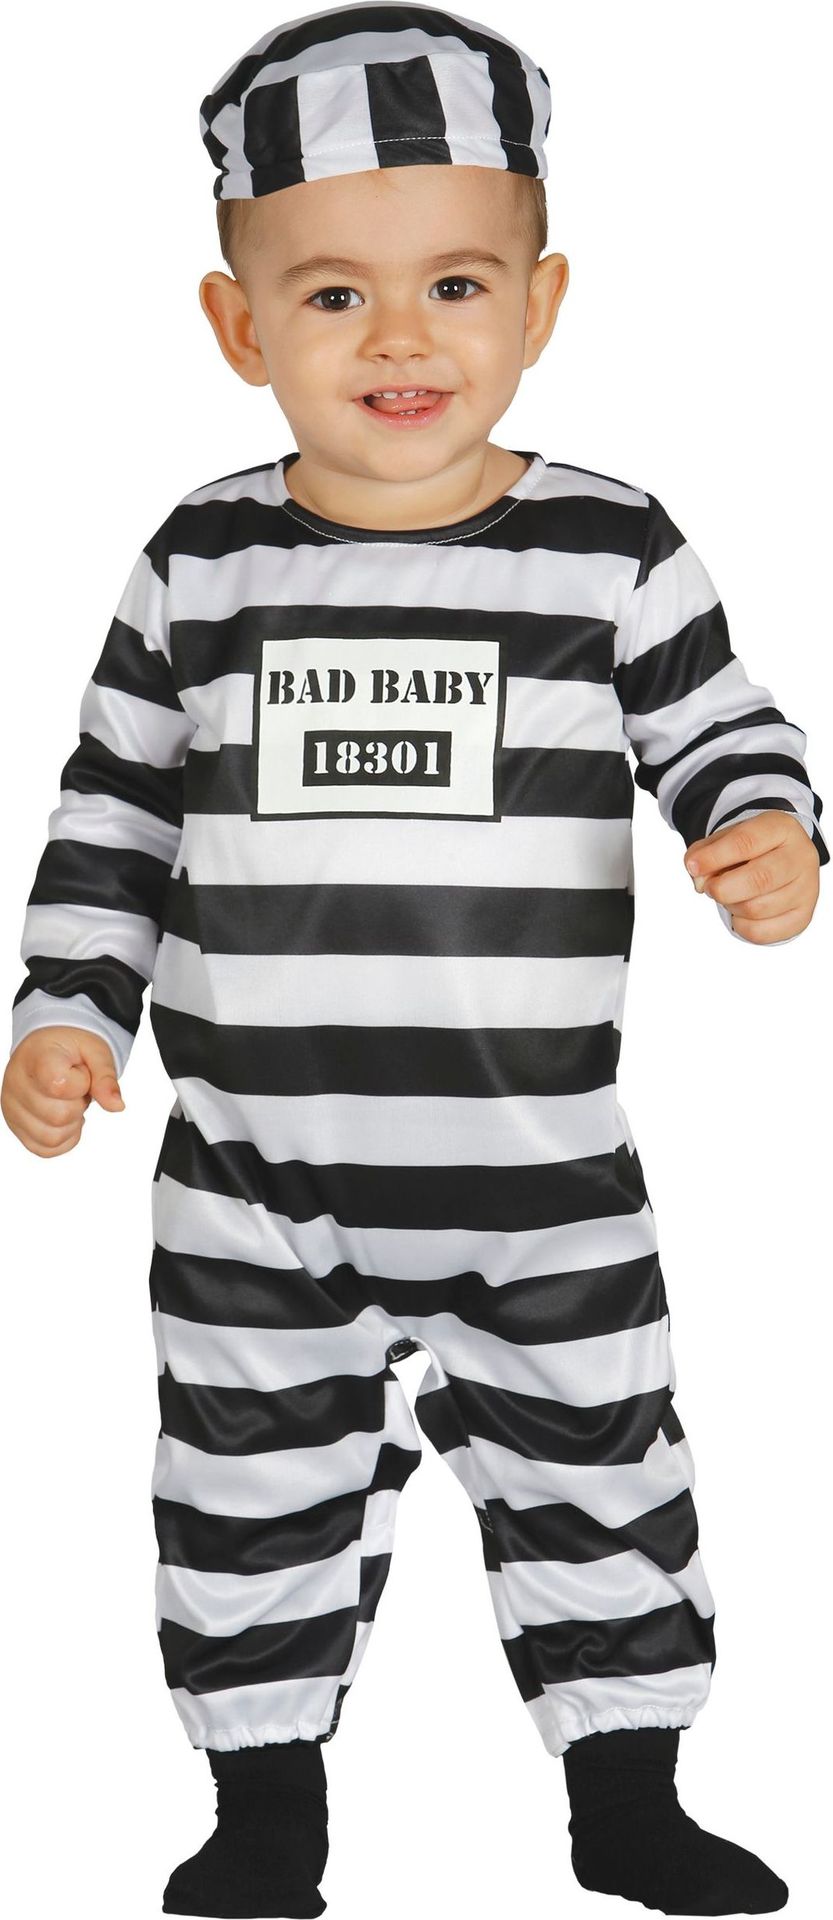 Bad Baby onesie